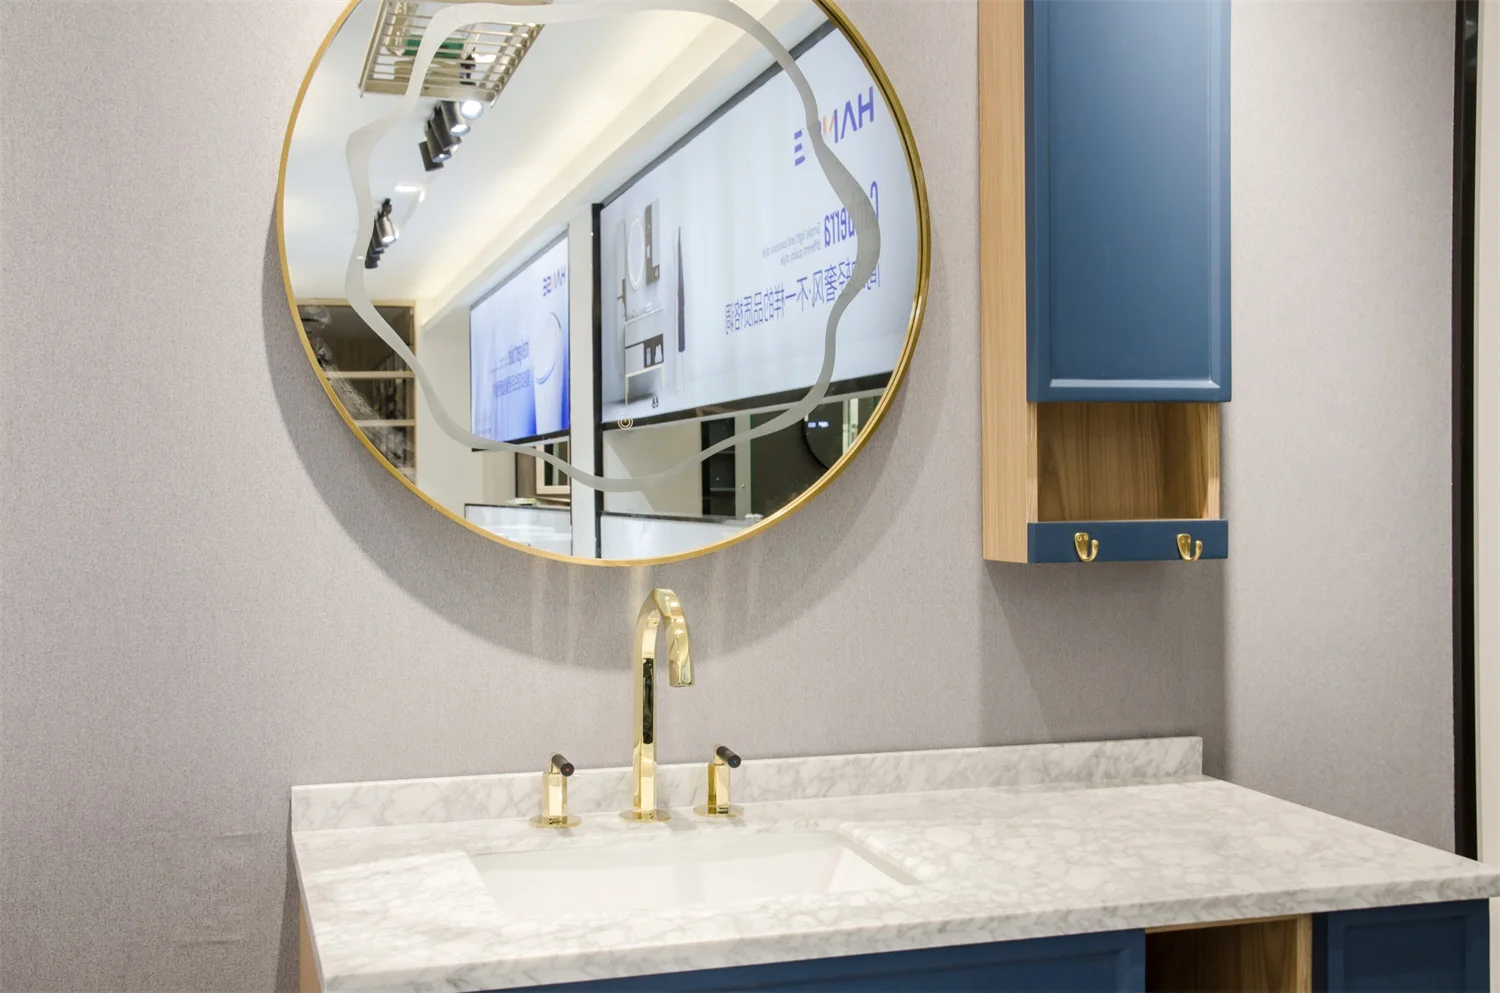 Brand Names Sanitary Manufacturer Restroom 3 Hole Gold Faucets Bathroom Buy Gold Faucets Bathroom